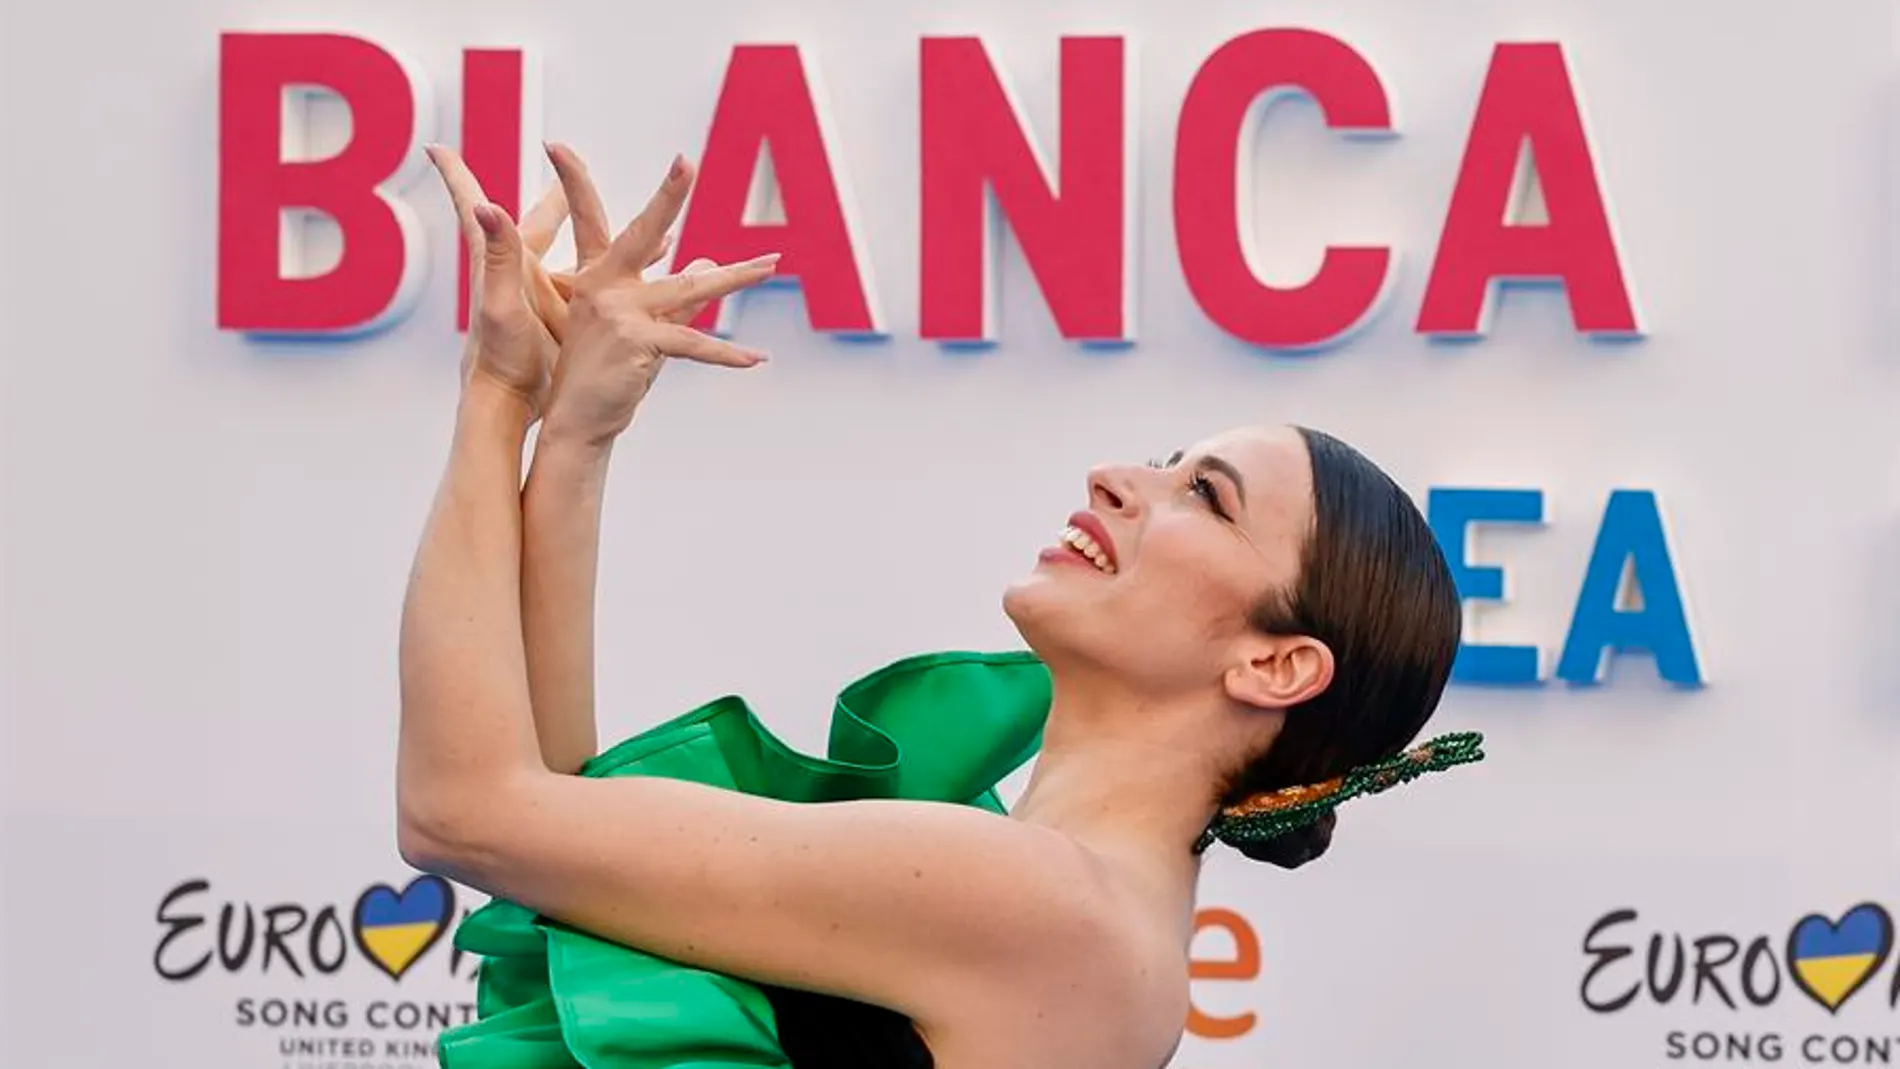 Blanca Paloma, en el photocall de la fiesta Eurovisión de Madrid